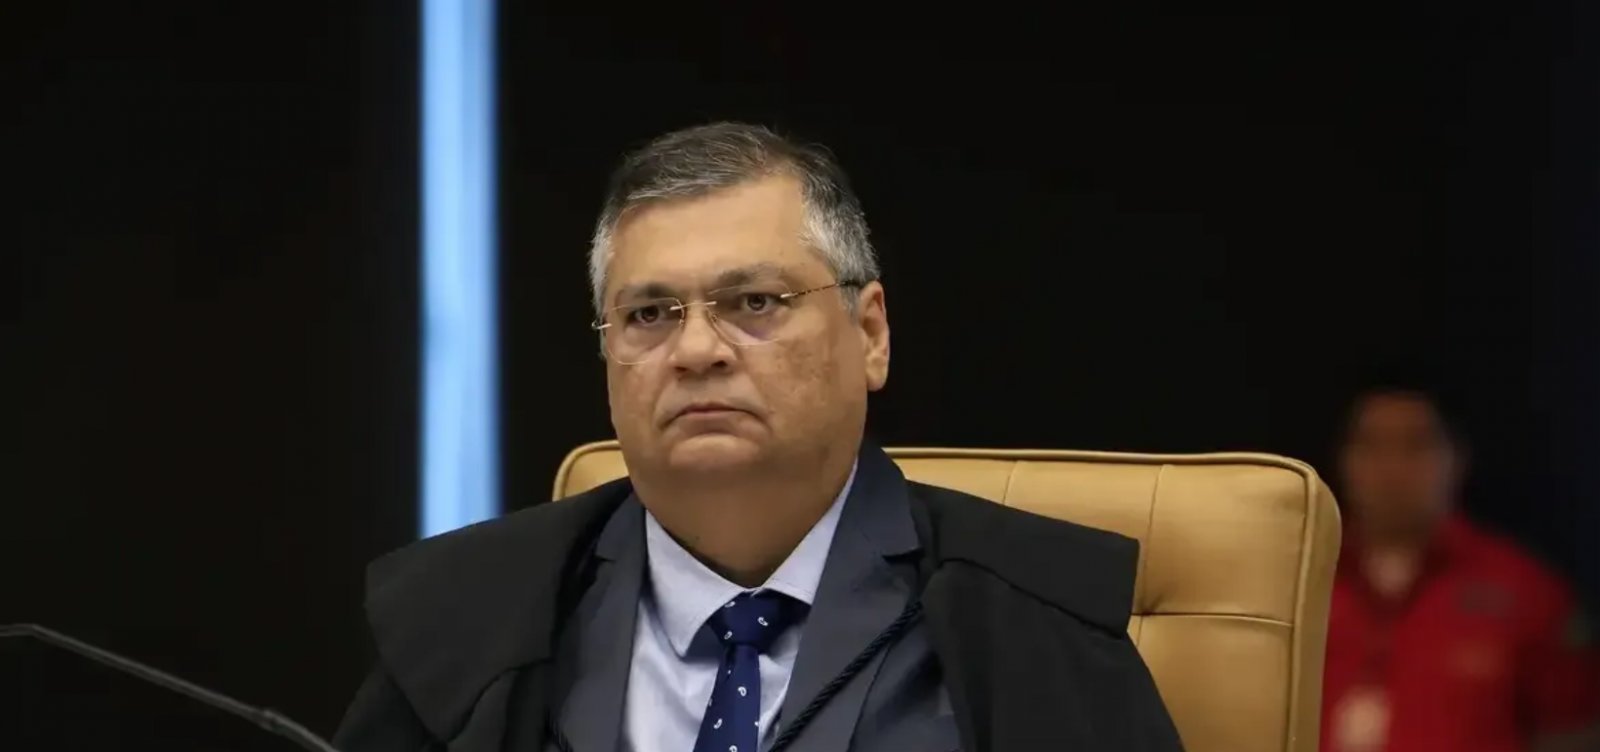 Flávio Dino rejeita recurso de Bolsonaro contra multa aplicada pelo TSE